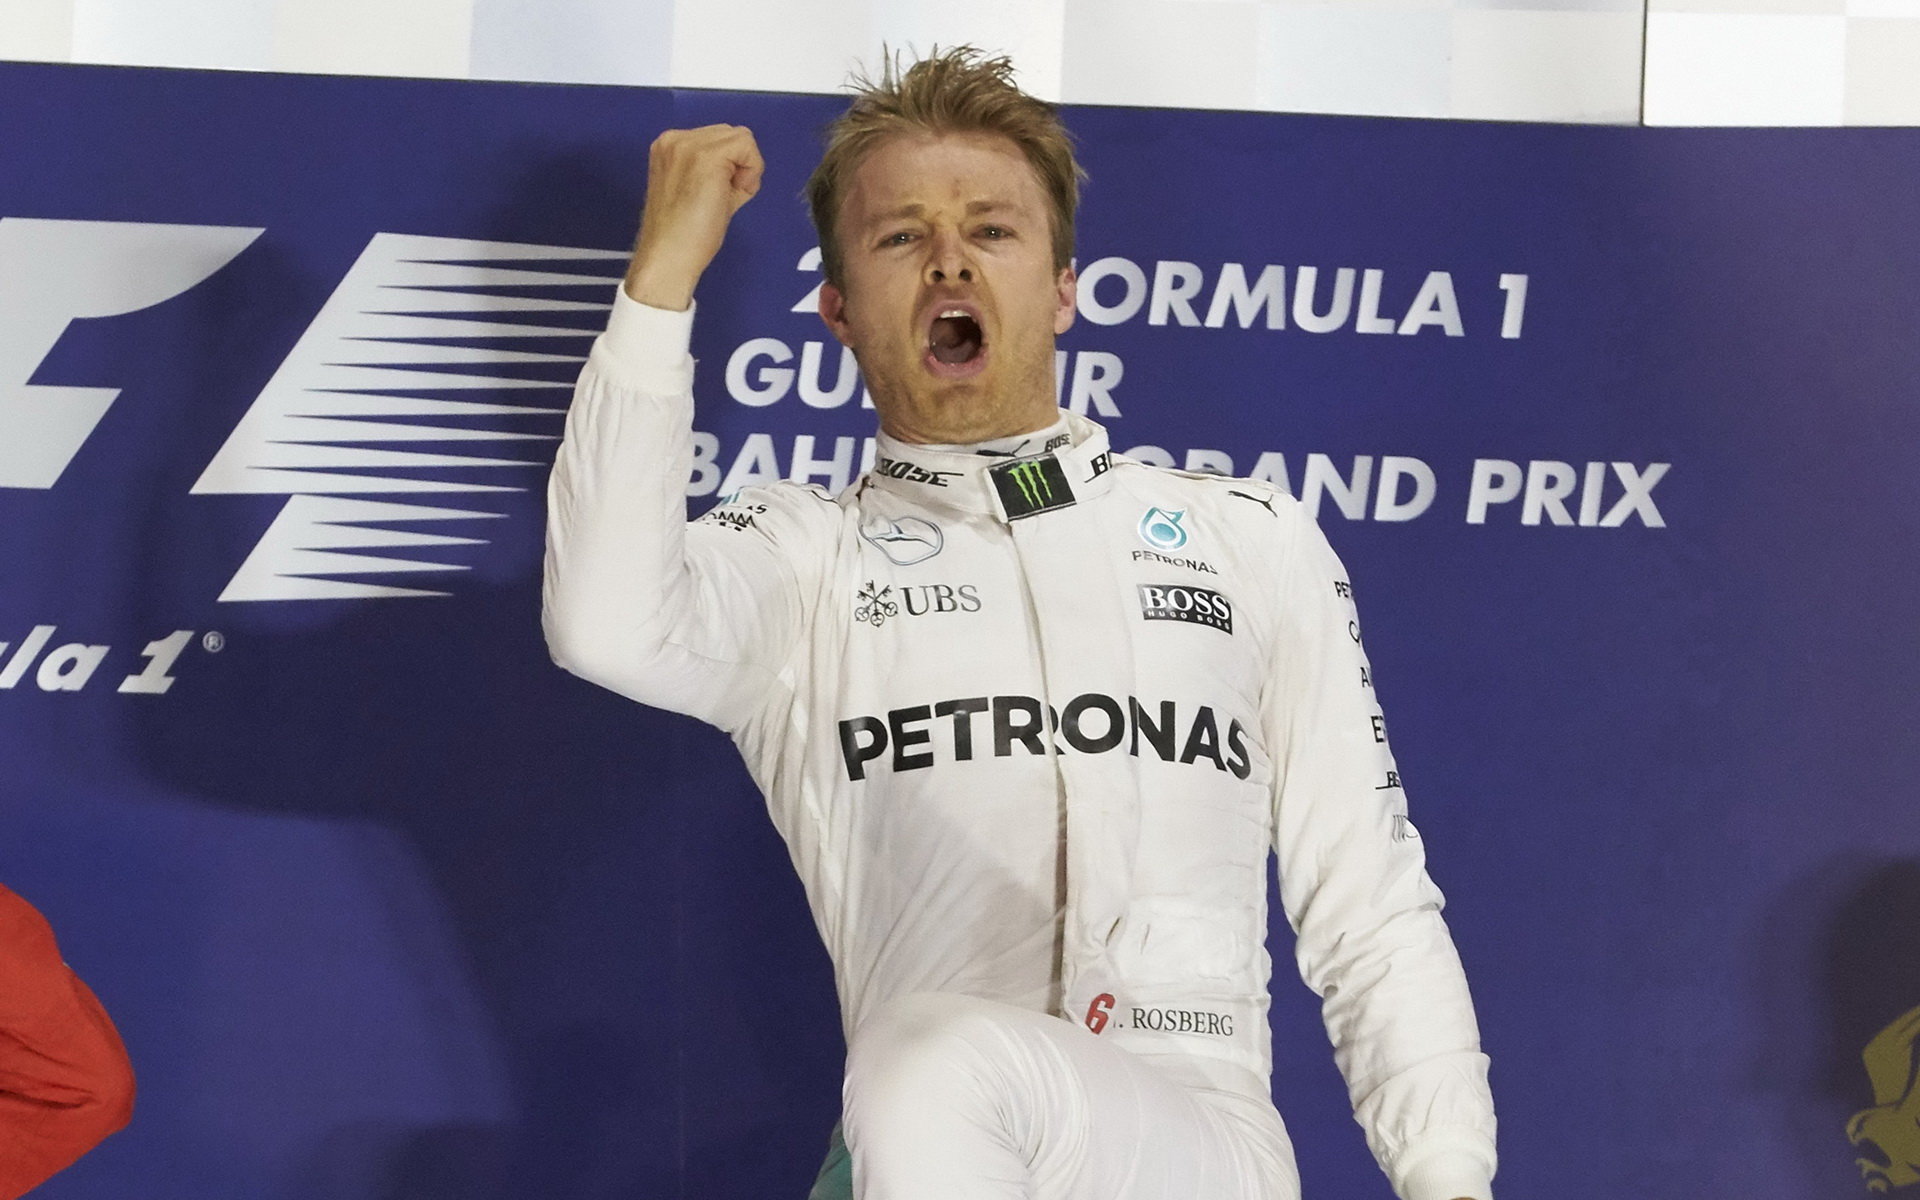 Nico Rosberg a jeho projev radosti z prvního místa v Bahrajnu